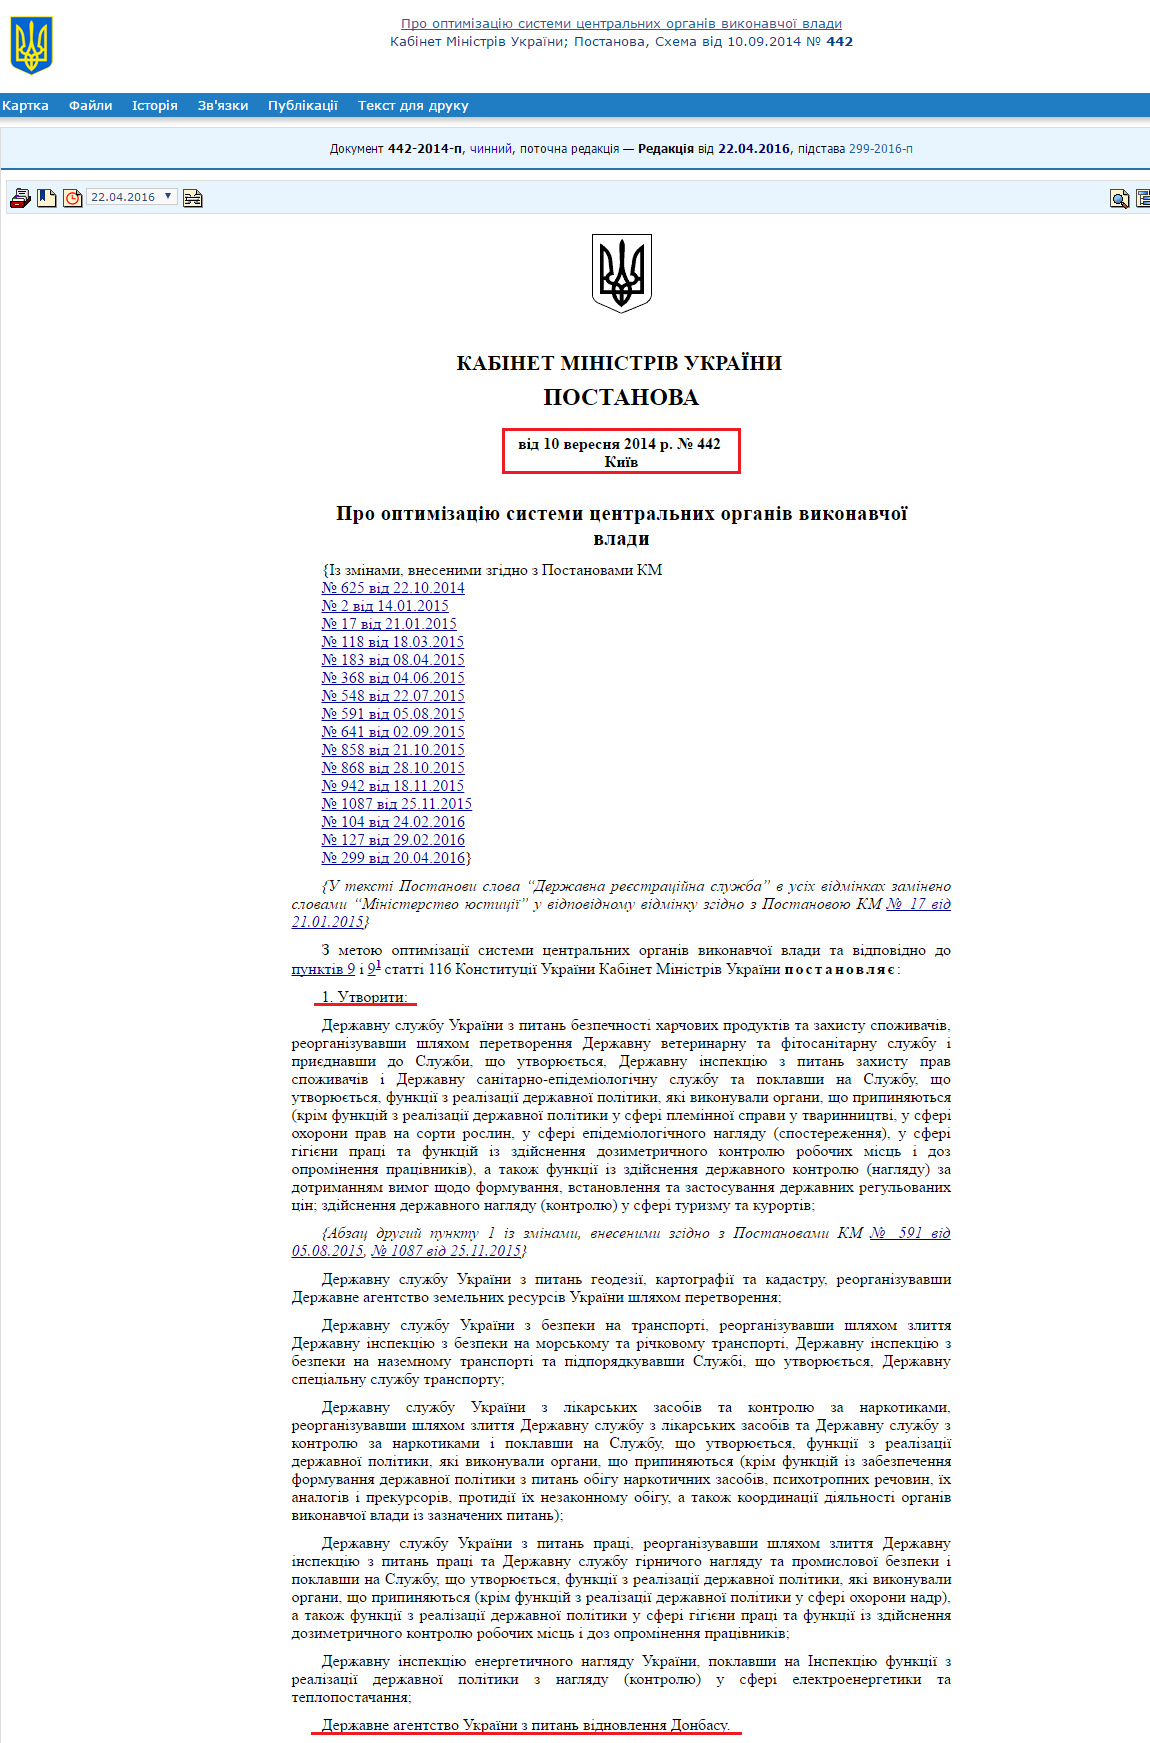 http://zakon4.rada.gov.ua/laws/show/442-2014-%D0%BF